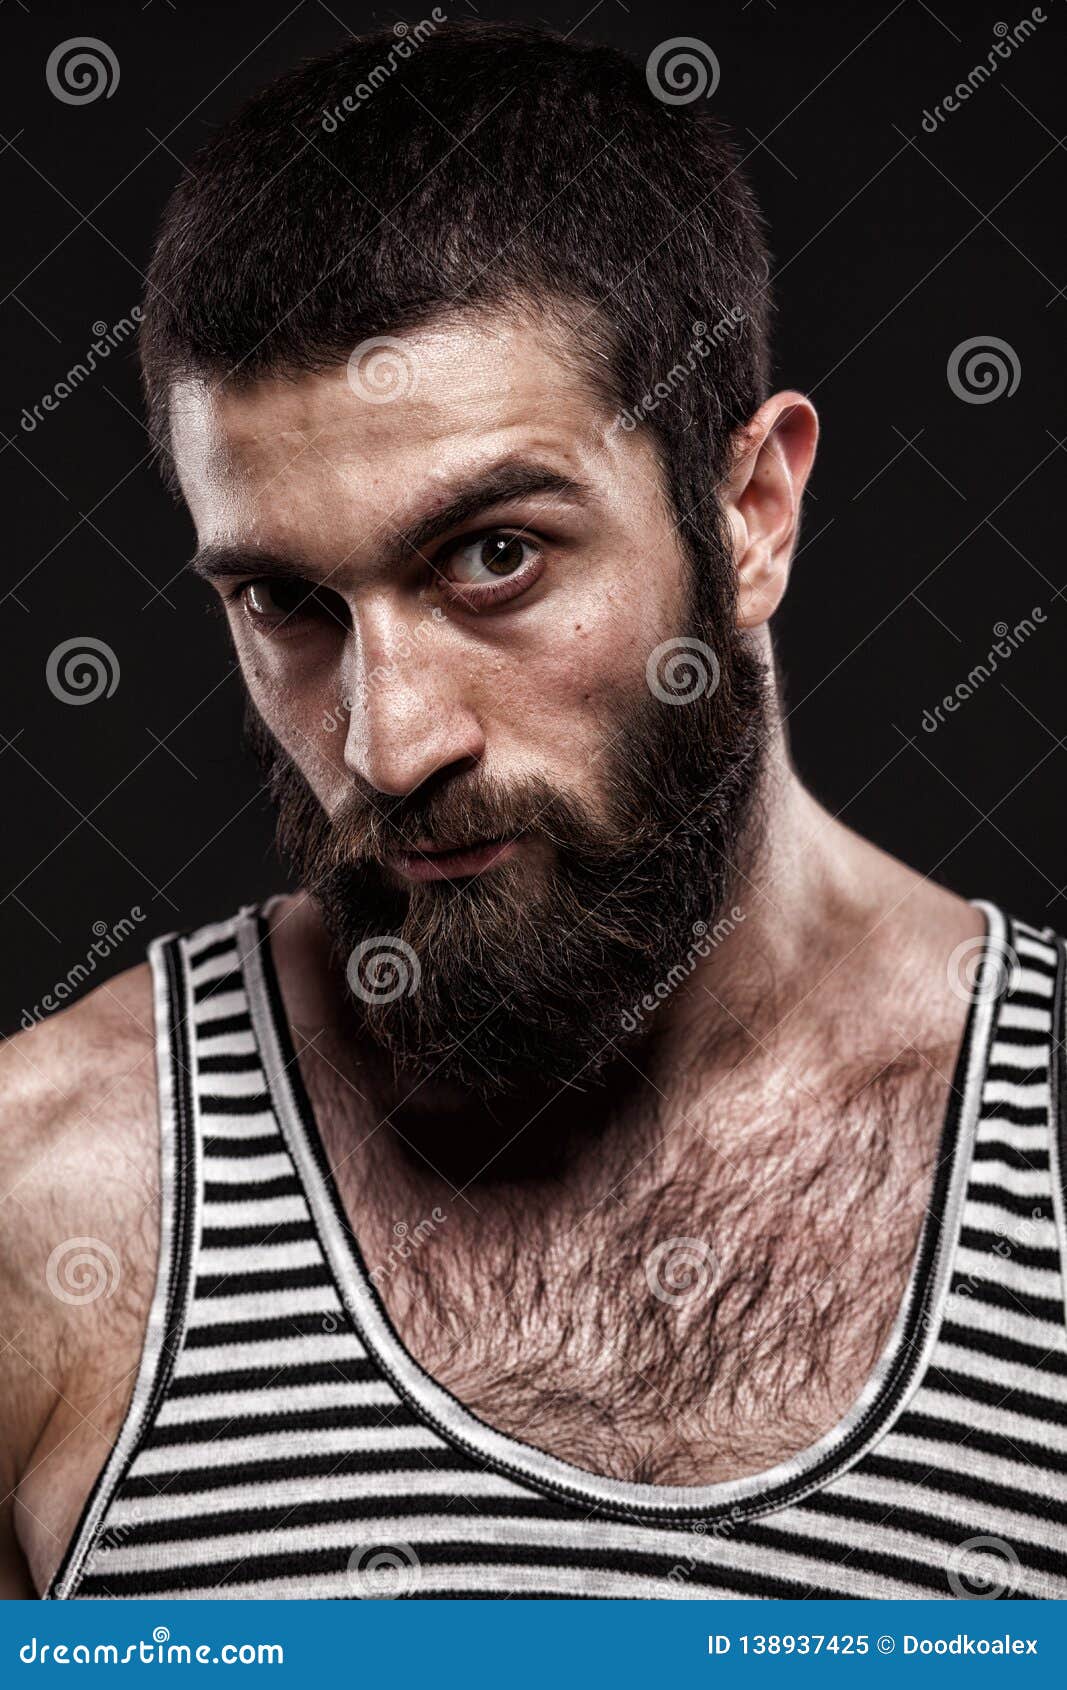 hairy average men selfies